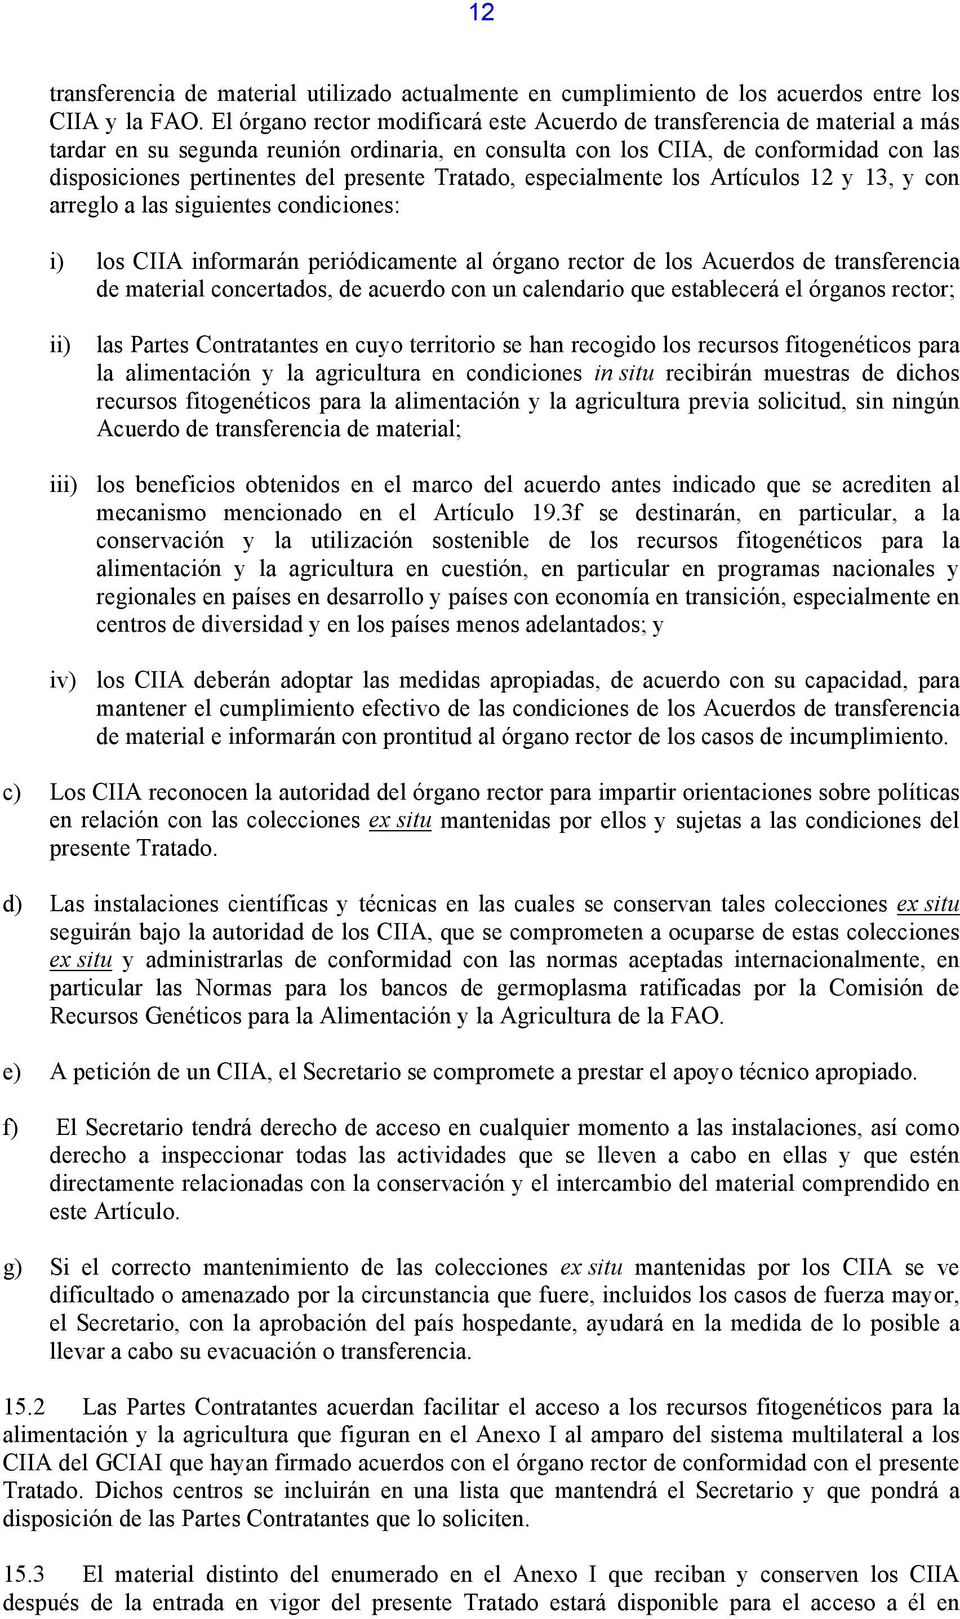 presente Tratado, especialmente los Artículos 12 y 13, y con arreglo a las siguientes condiciones: i) los CIIA informarán periódicamente al órgano rector de los Acuerdos de transferencia de material